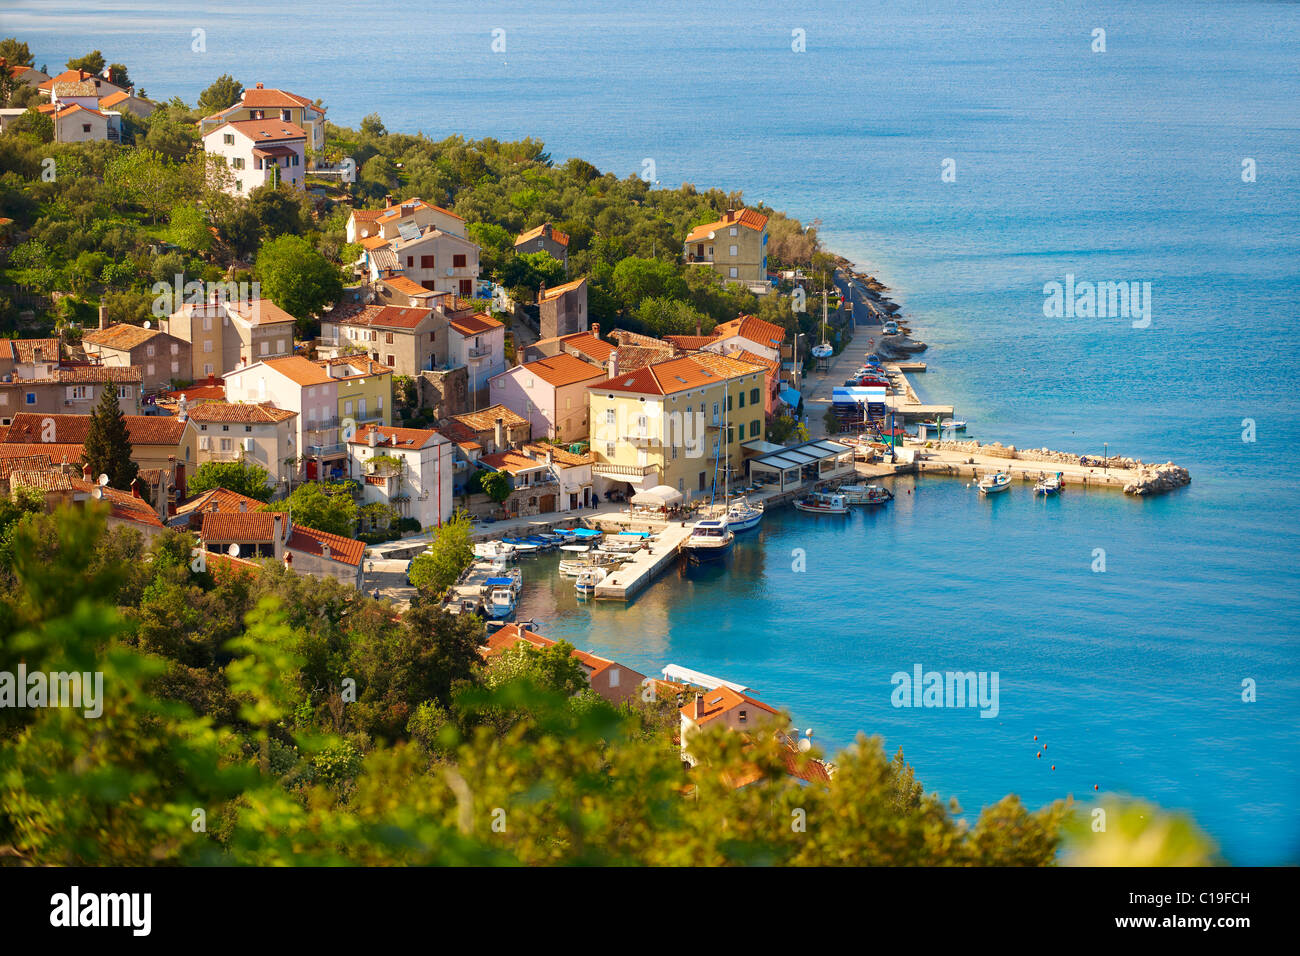 Valun, village de pêcheurs de l'île de Cres, Croatie Banque D'Images